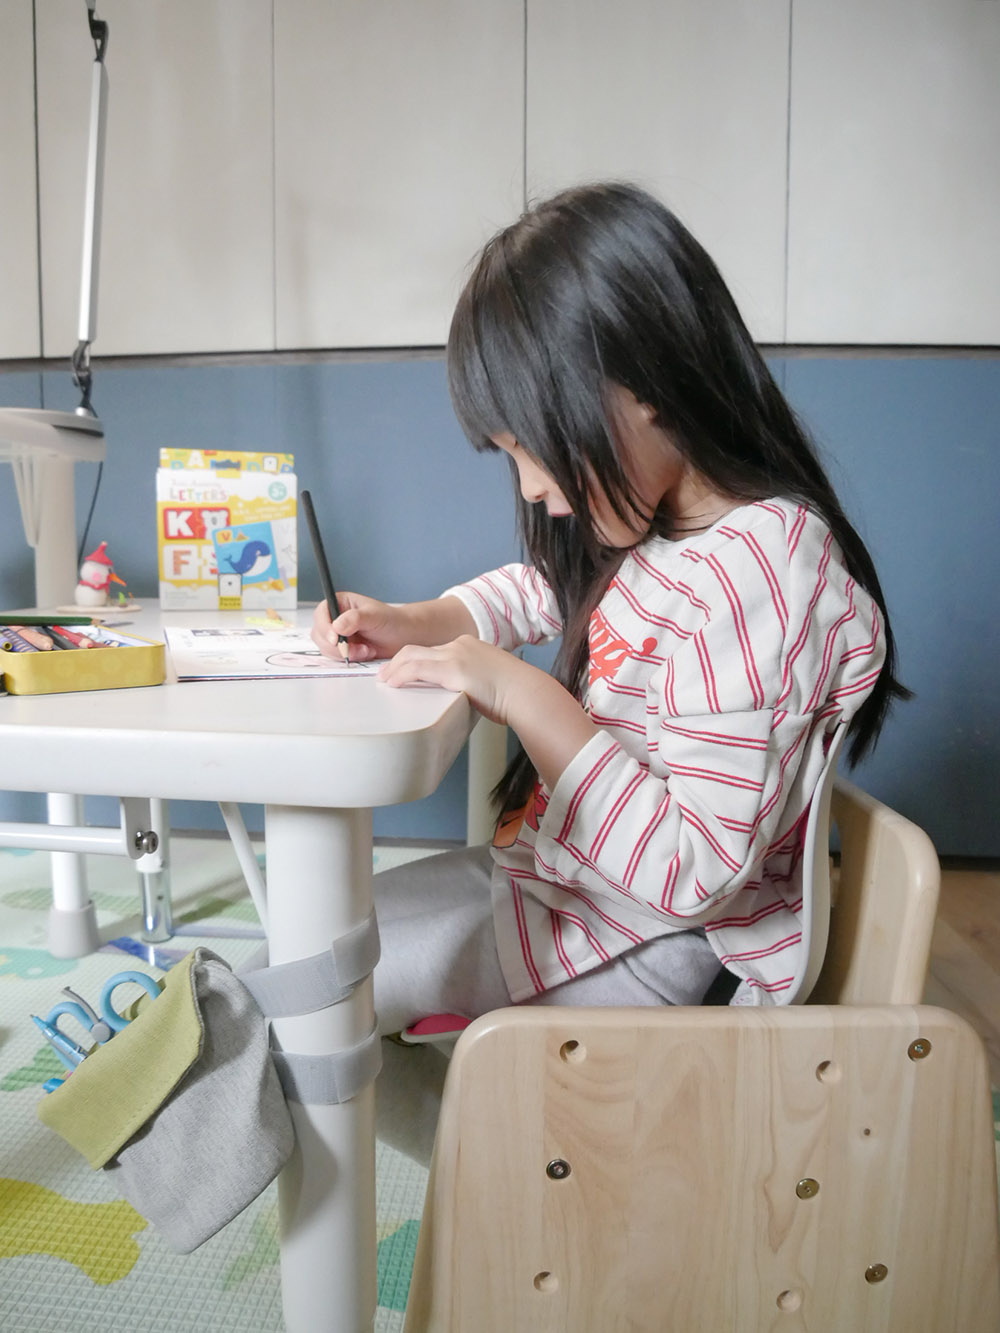 [啾團] 韓國-Curble Wider 3D護脊美學椅減少駝背機會,讓身體的自然而然挺直(Curble Kids 3D護脊美學椅)